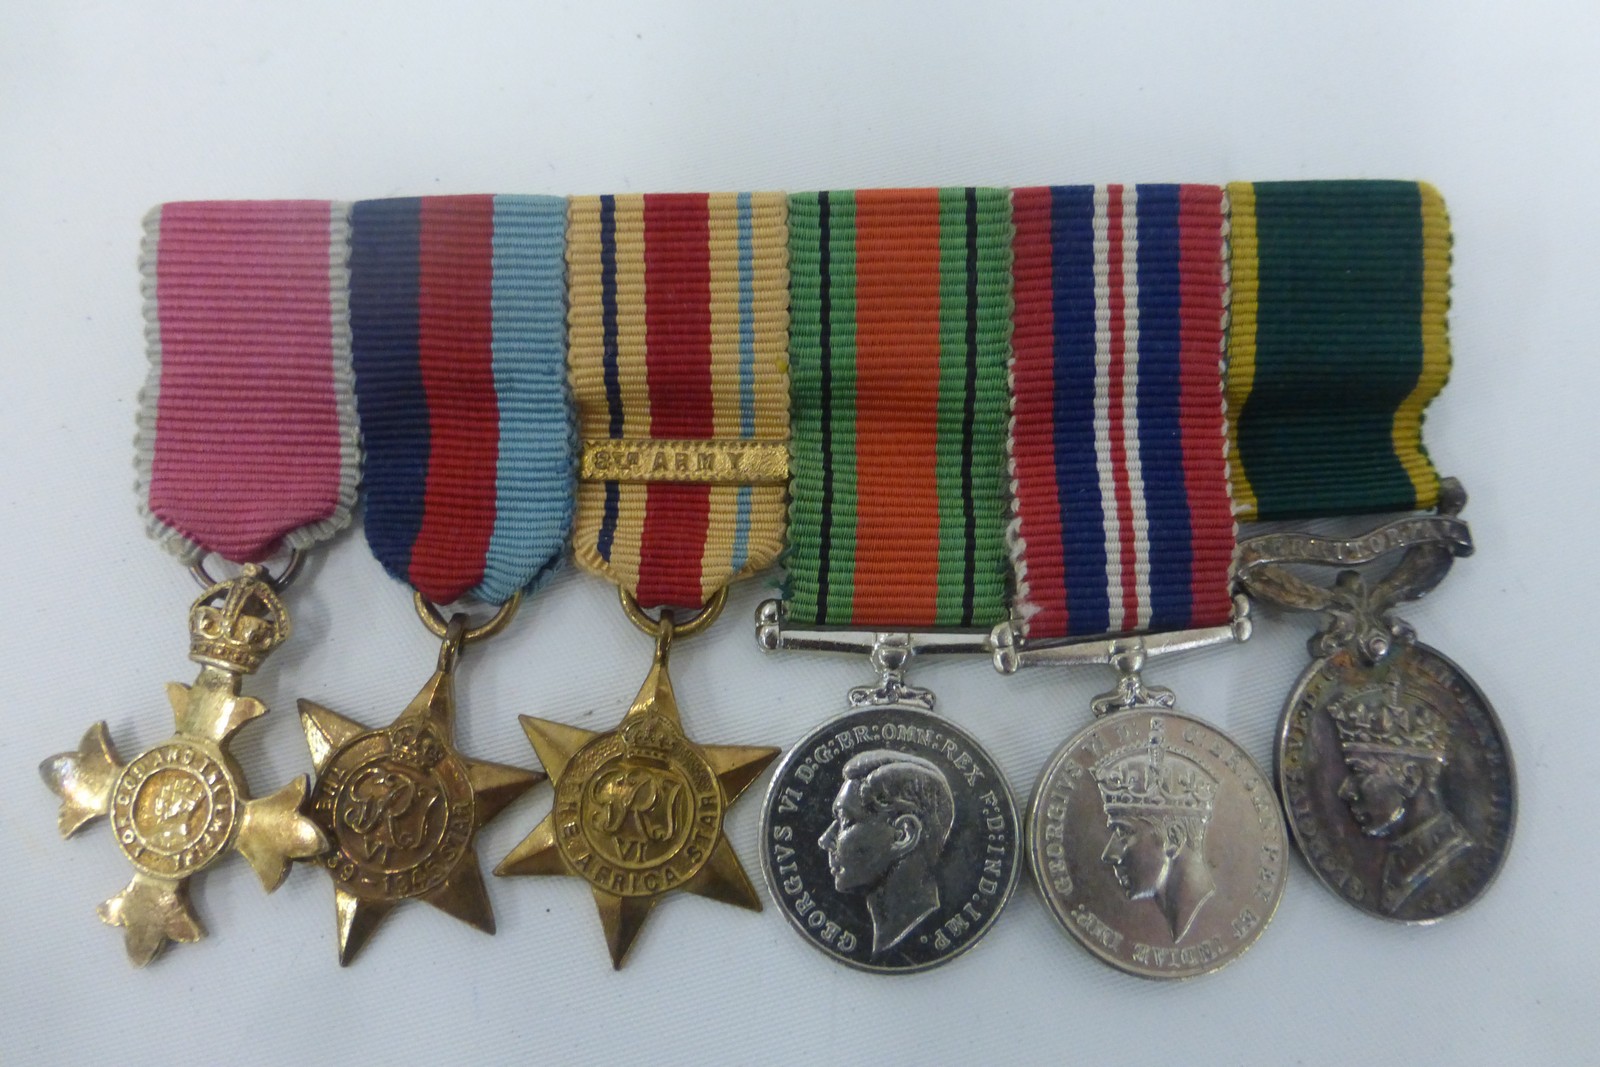 A WW2 miniature medal group including the M.B.E.